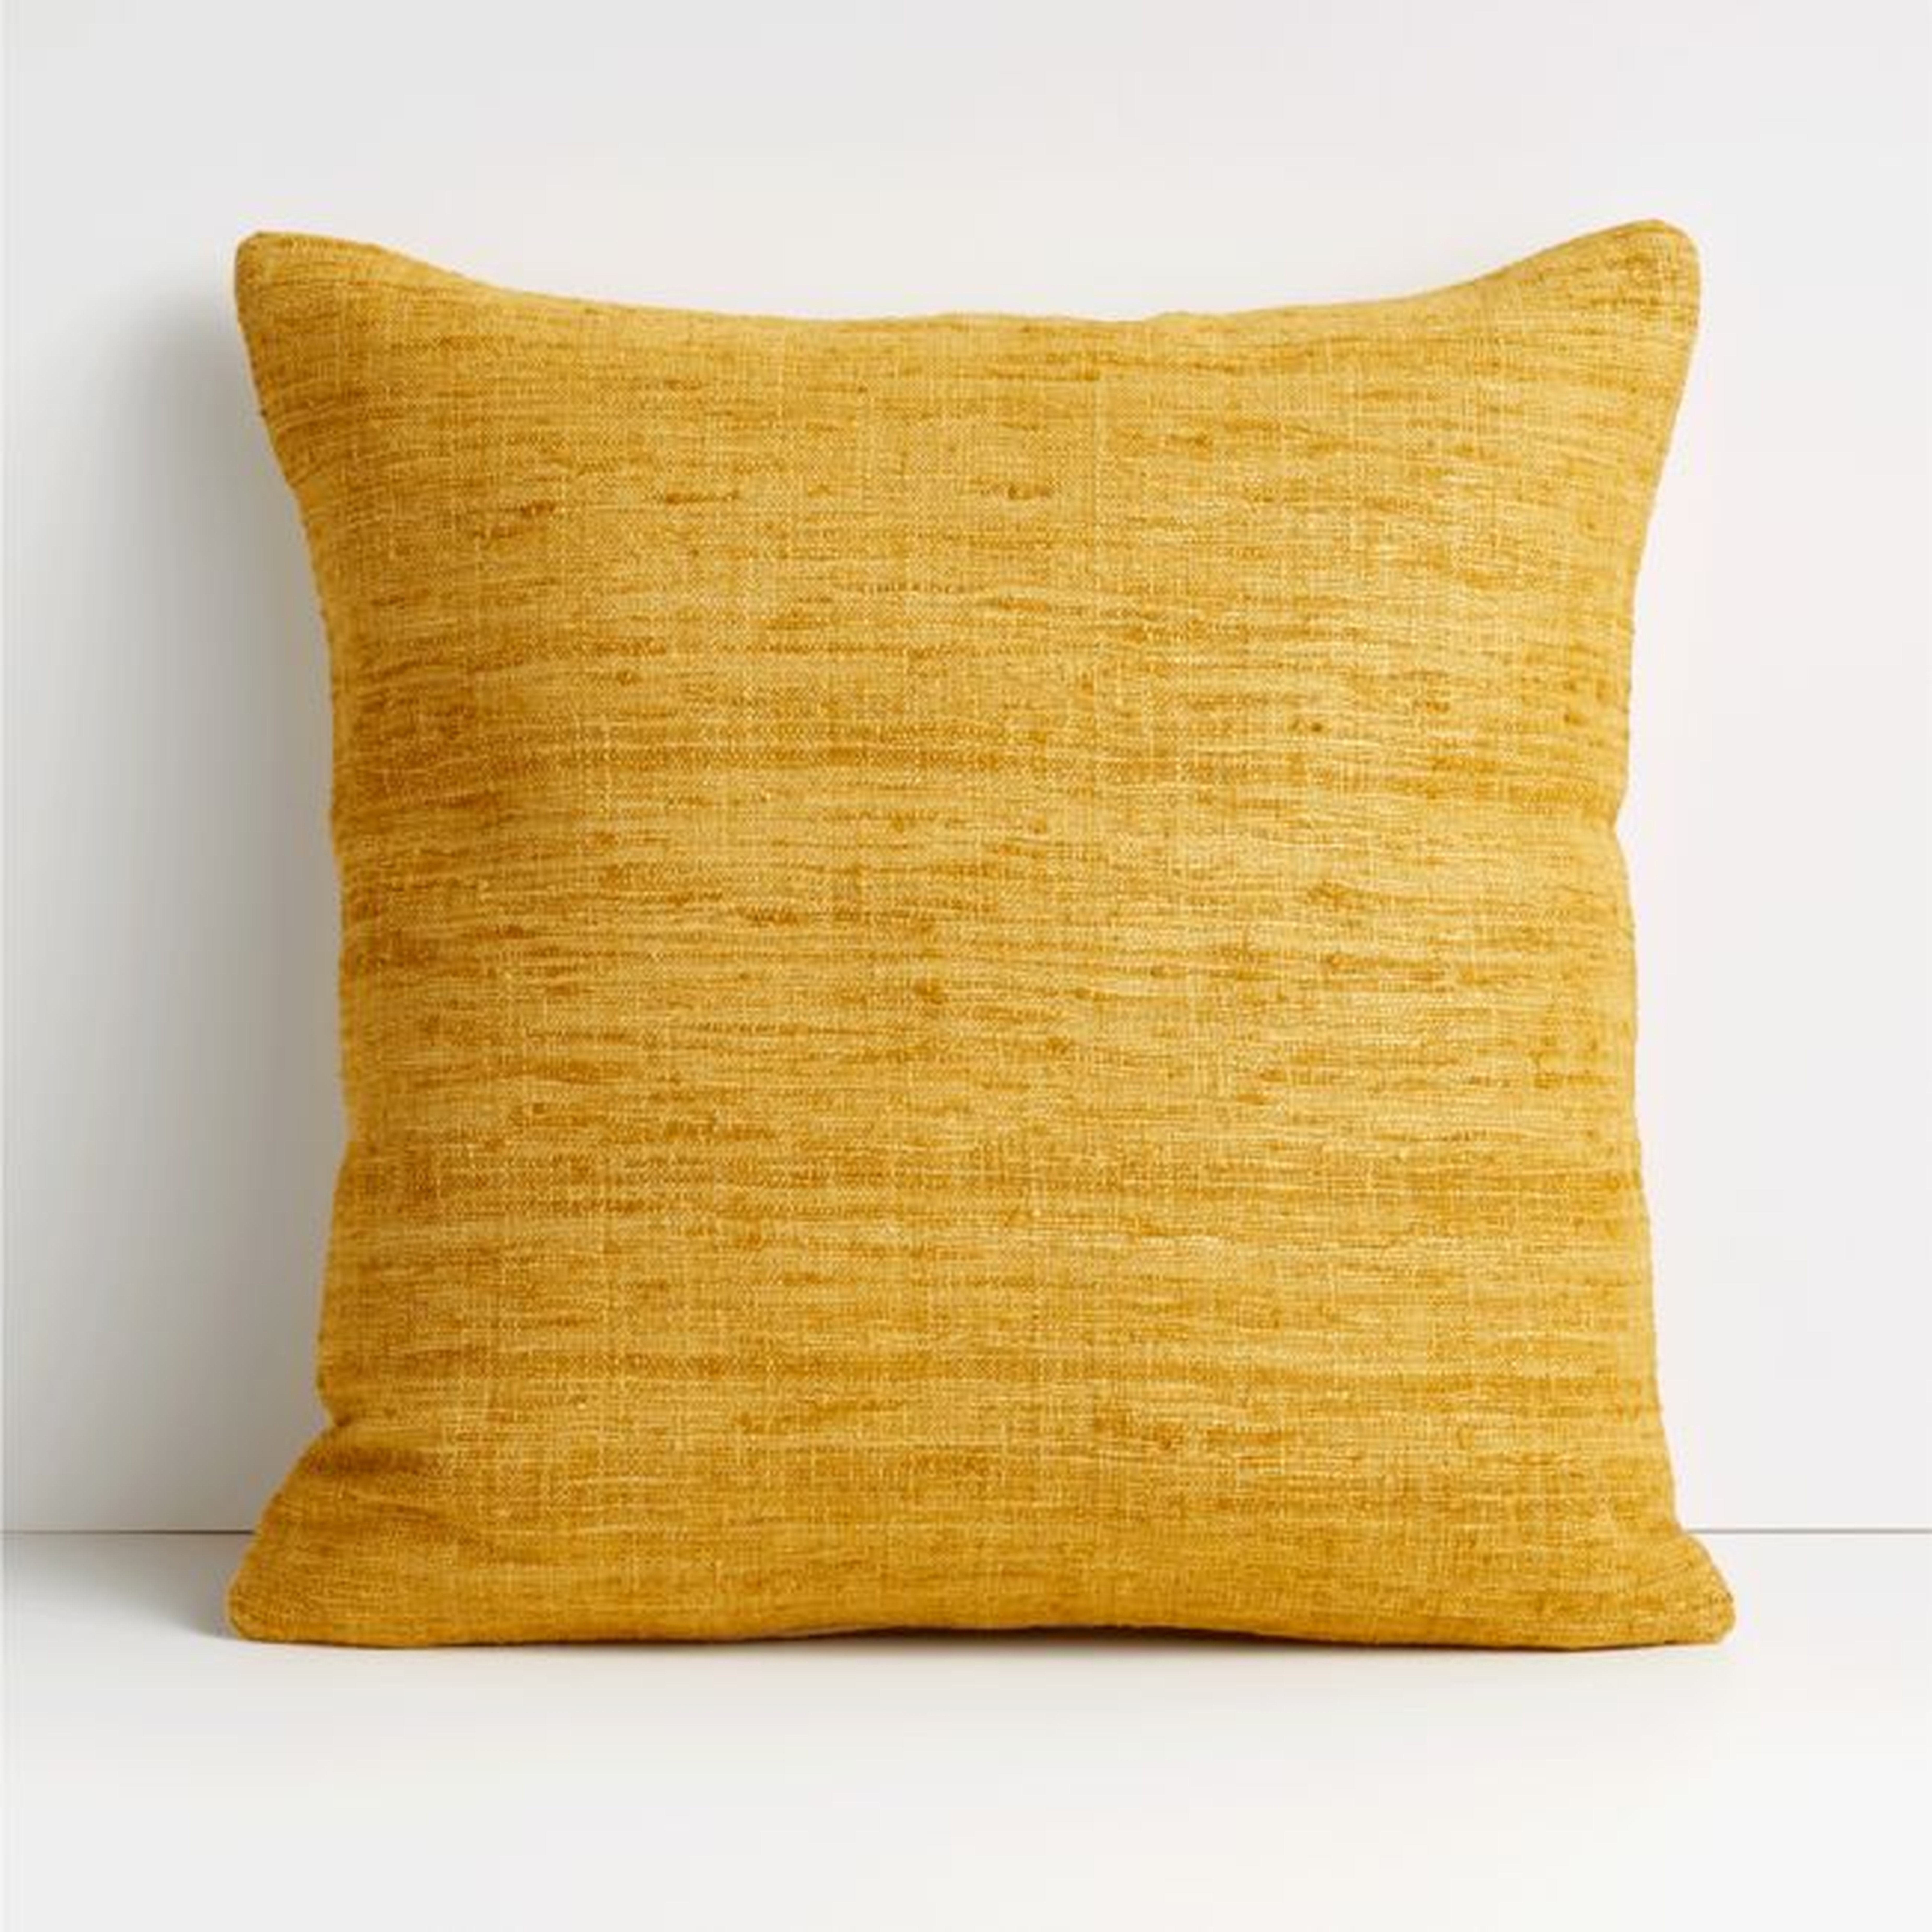 Yellow 20"x20" Cotton Sari Silk Throw Pillow Cover - Crate and Barrel